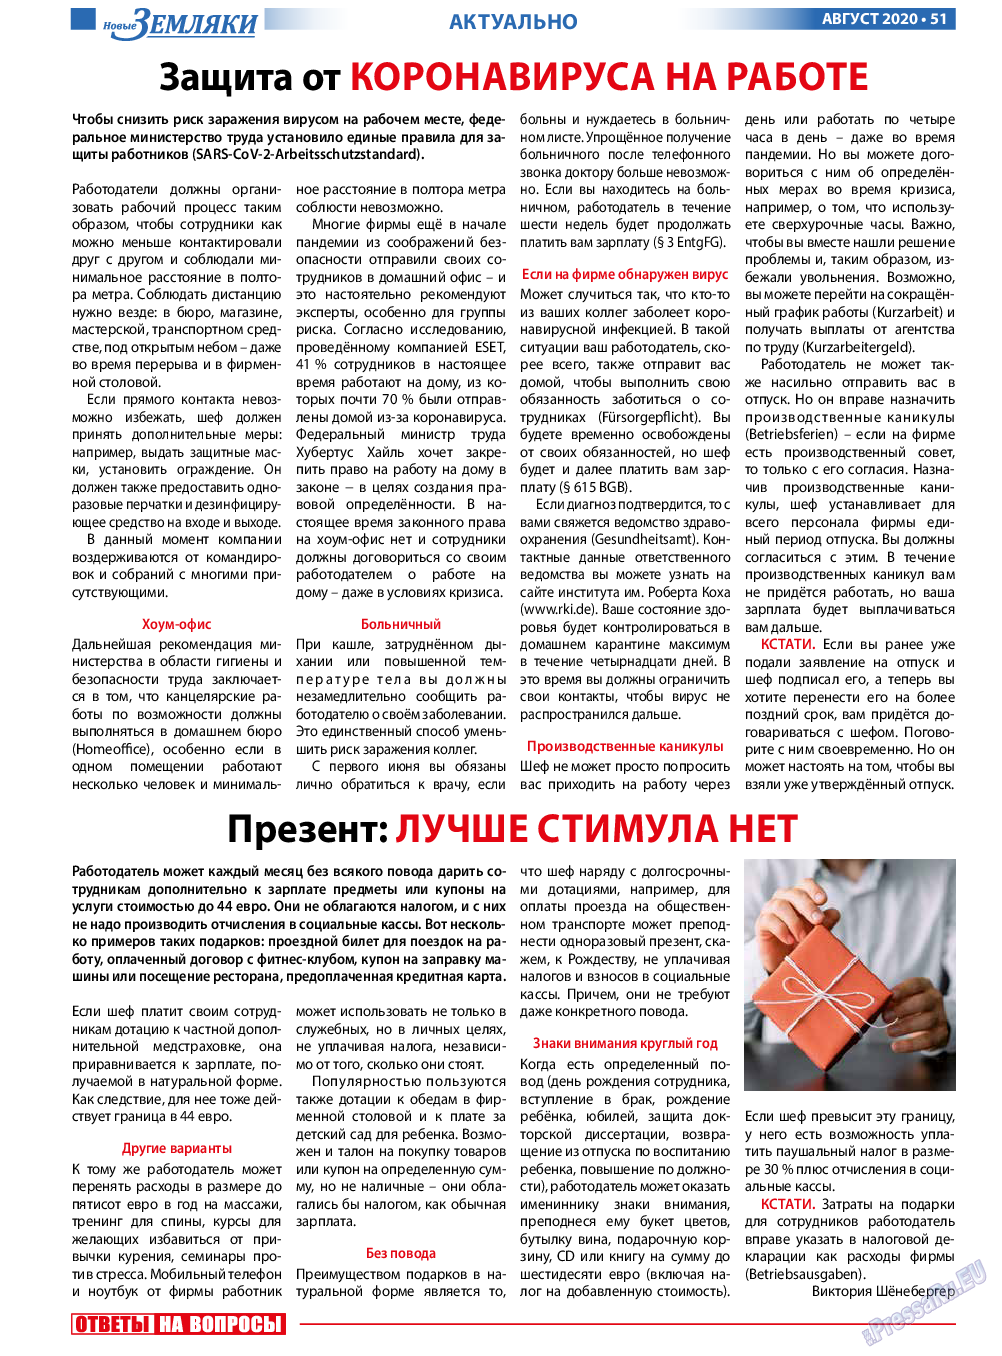 Новые Земляки, газета. 2020 №8 стр.51